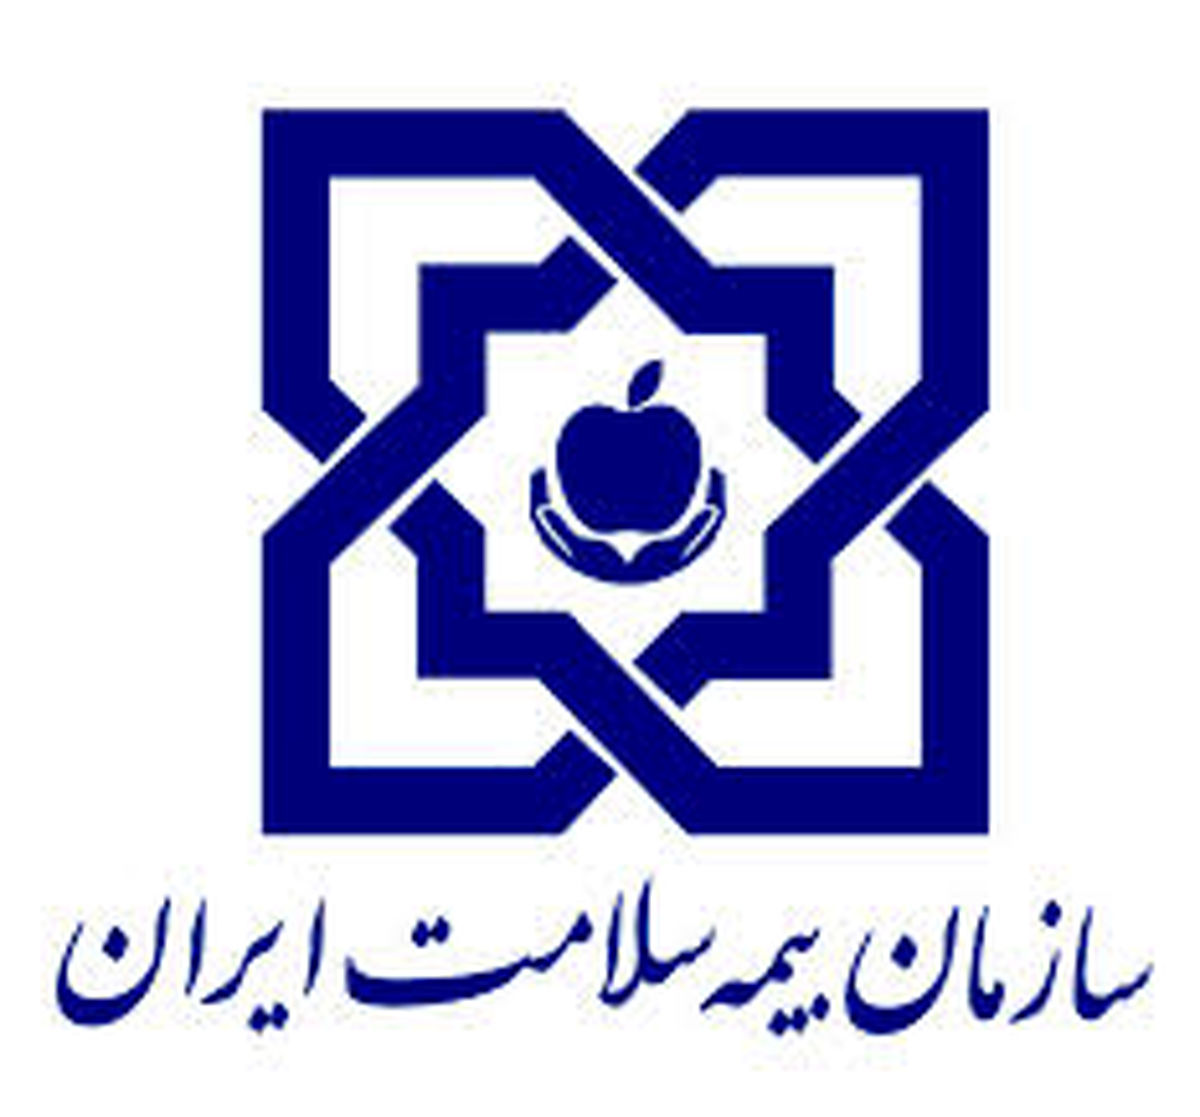 "سازمان بیمه سلامت" به وزارت بهداشت ملحق شد